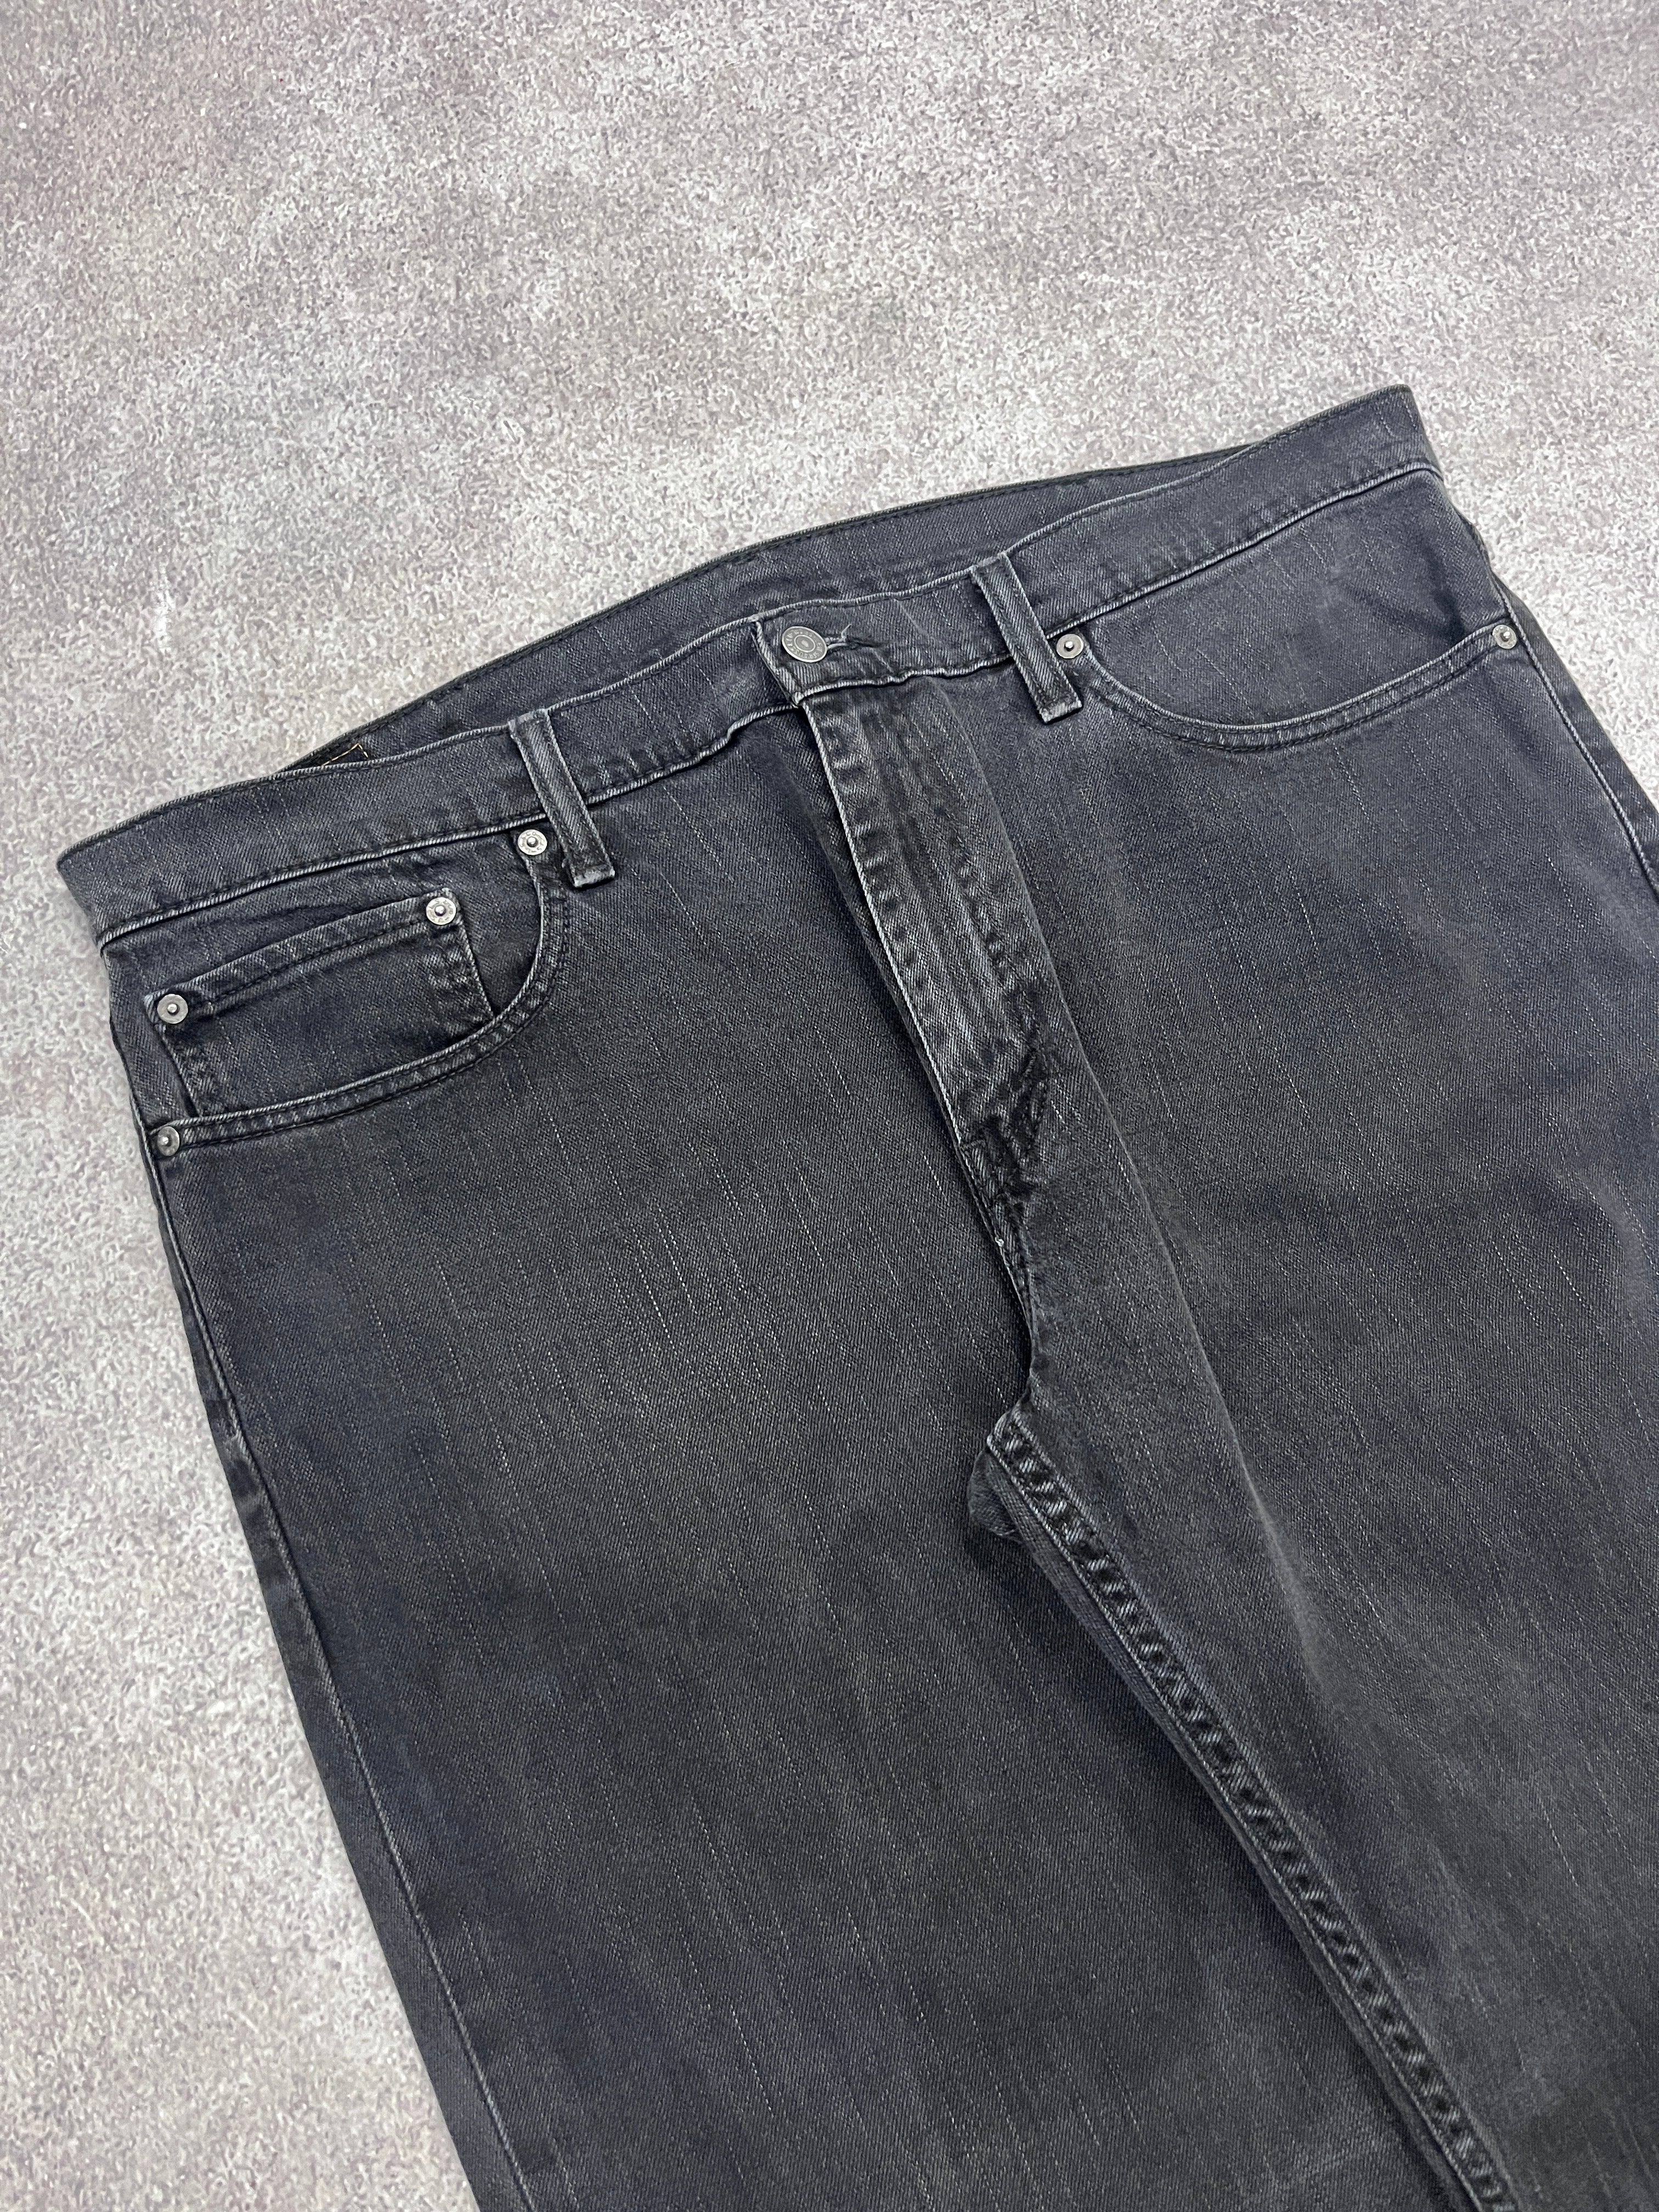 Vintage Levi 559 Denim Jeans  // W38 L32 - RHAGHOUSE VINTAGE